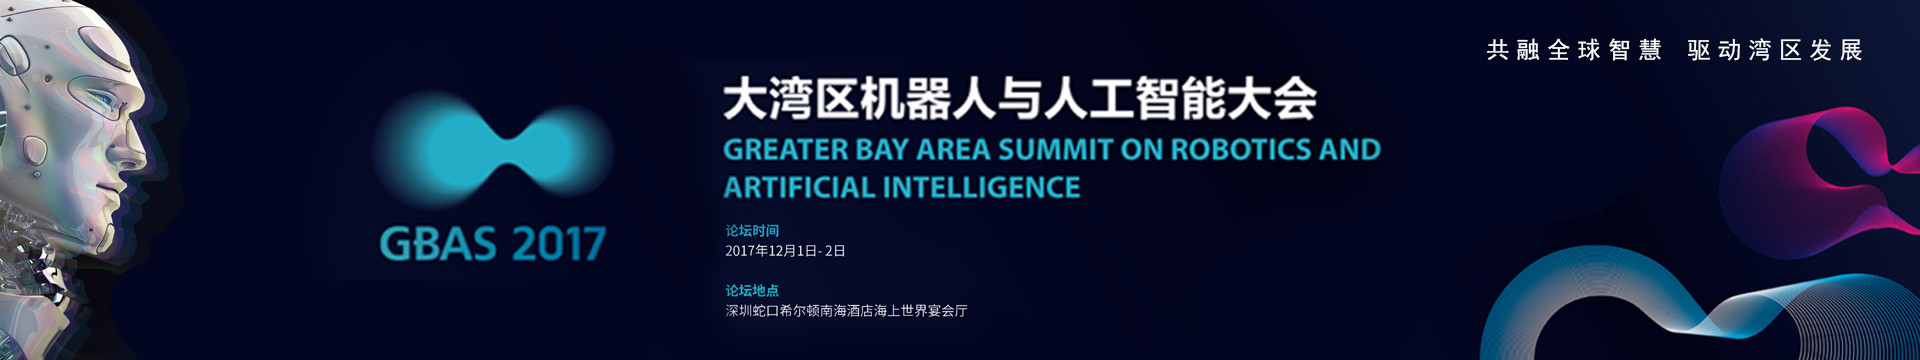 GBAS 2018大湾区机器人与人工智能大会